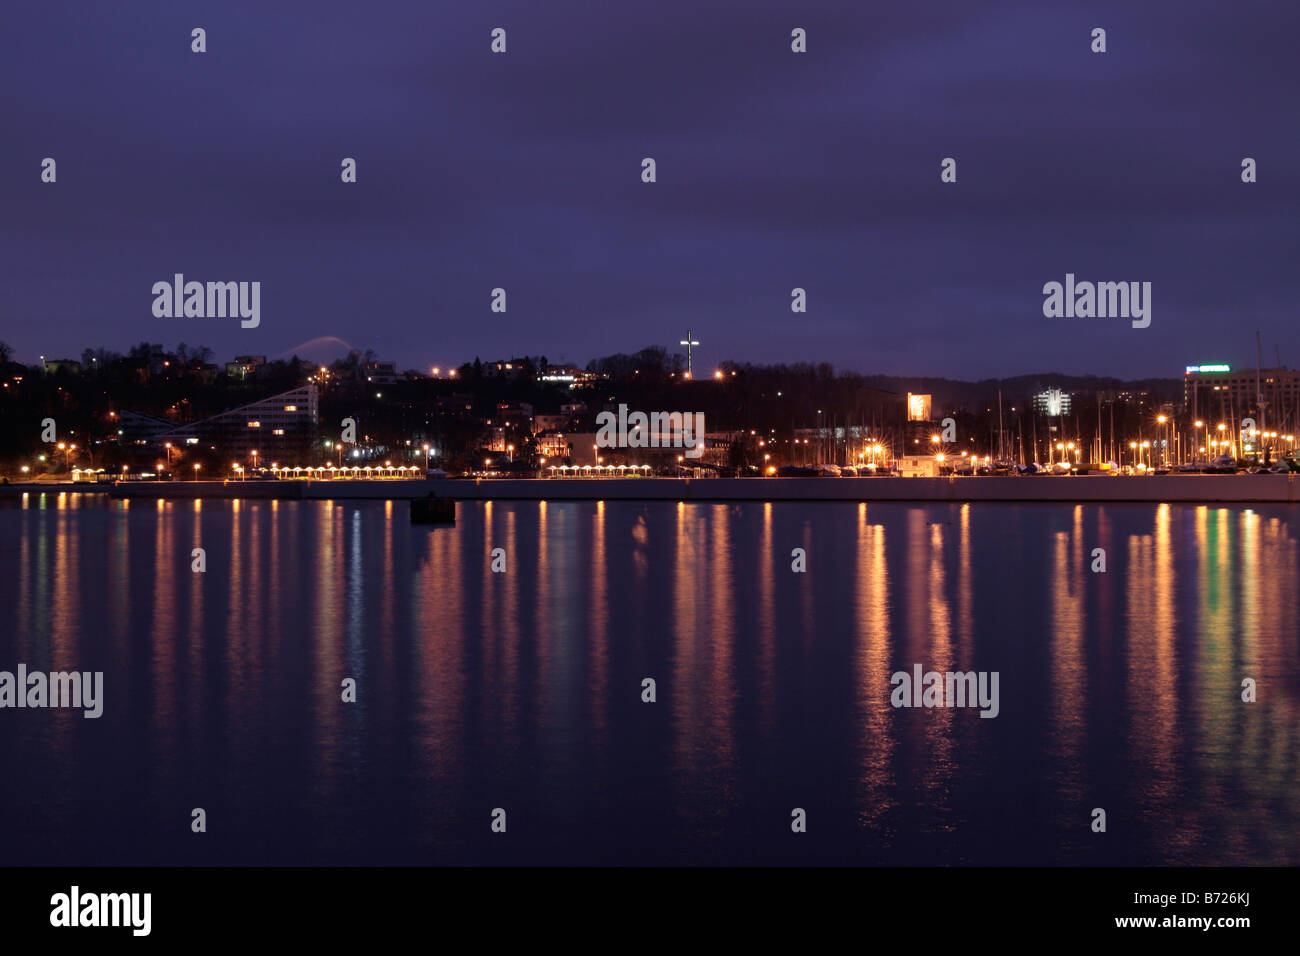 Gdynia Waterfront at night Stock Photo